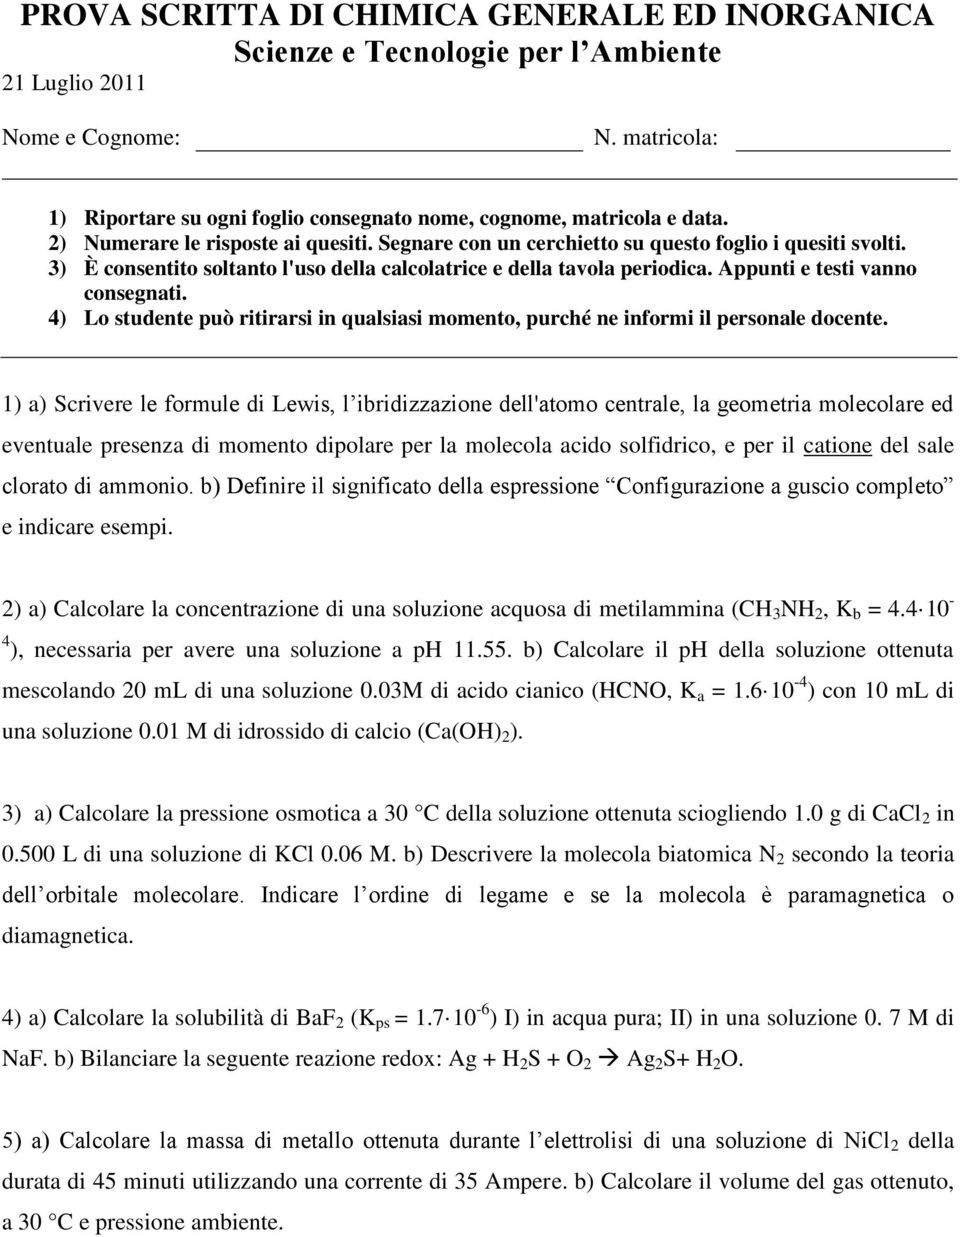 2) a) Calcolare la concentrazione di una soluzione acquosa di metilammina (CH 3 NH 2, K b = 4.4 10-4 ), necessaria per avere una soluzione a ph 11.55.